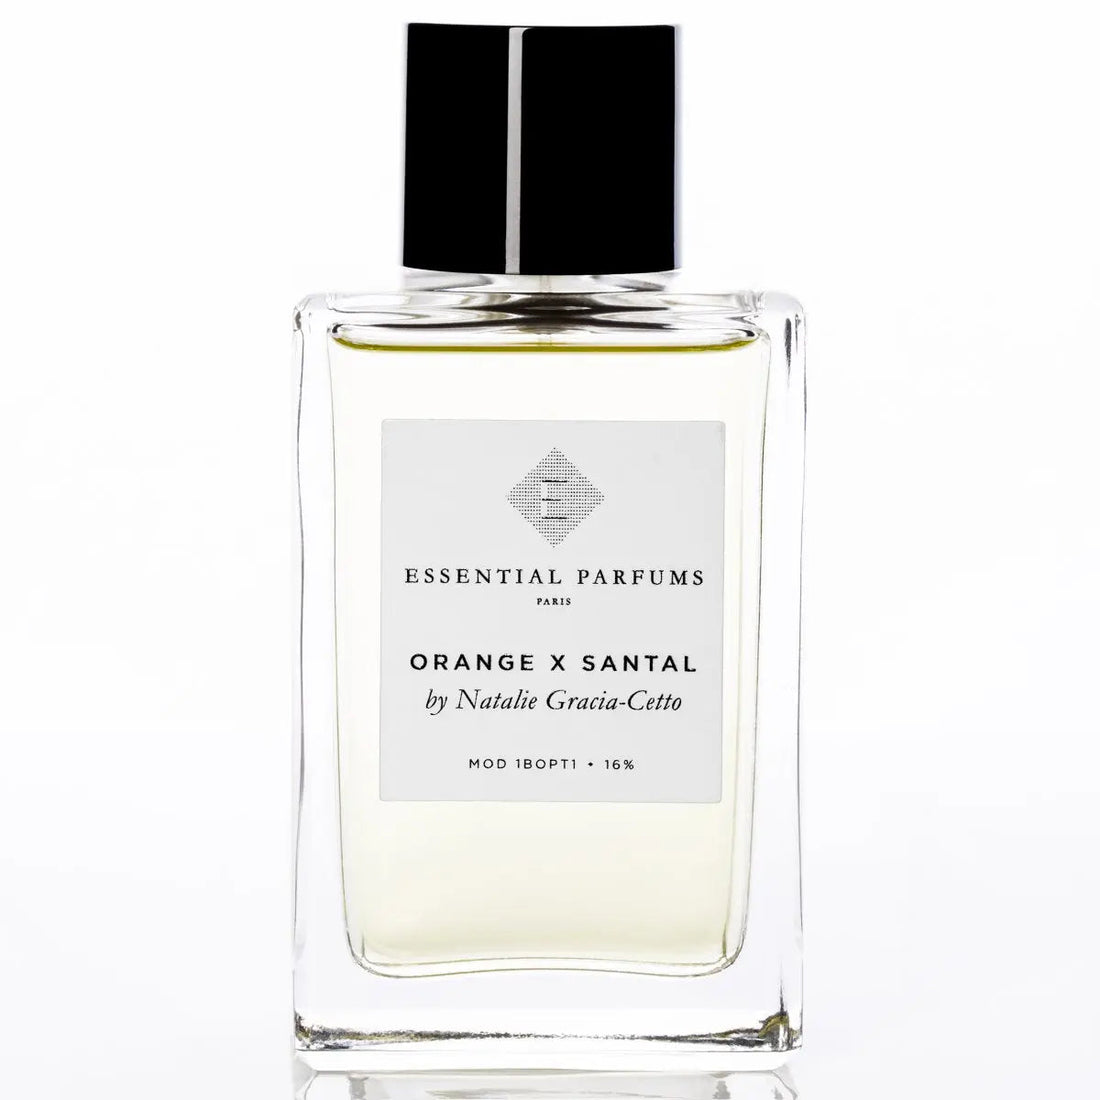 Essential parfums Orange X Santal eau de parfum - 100 ml